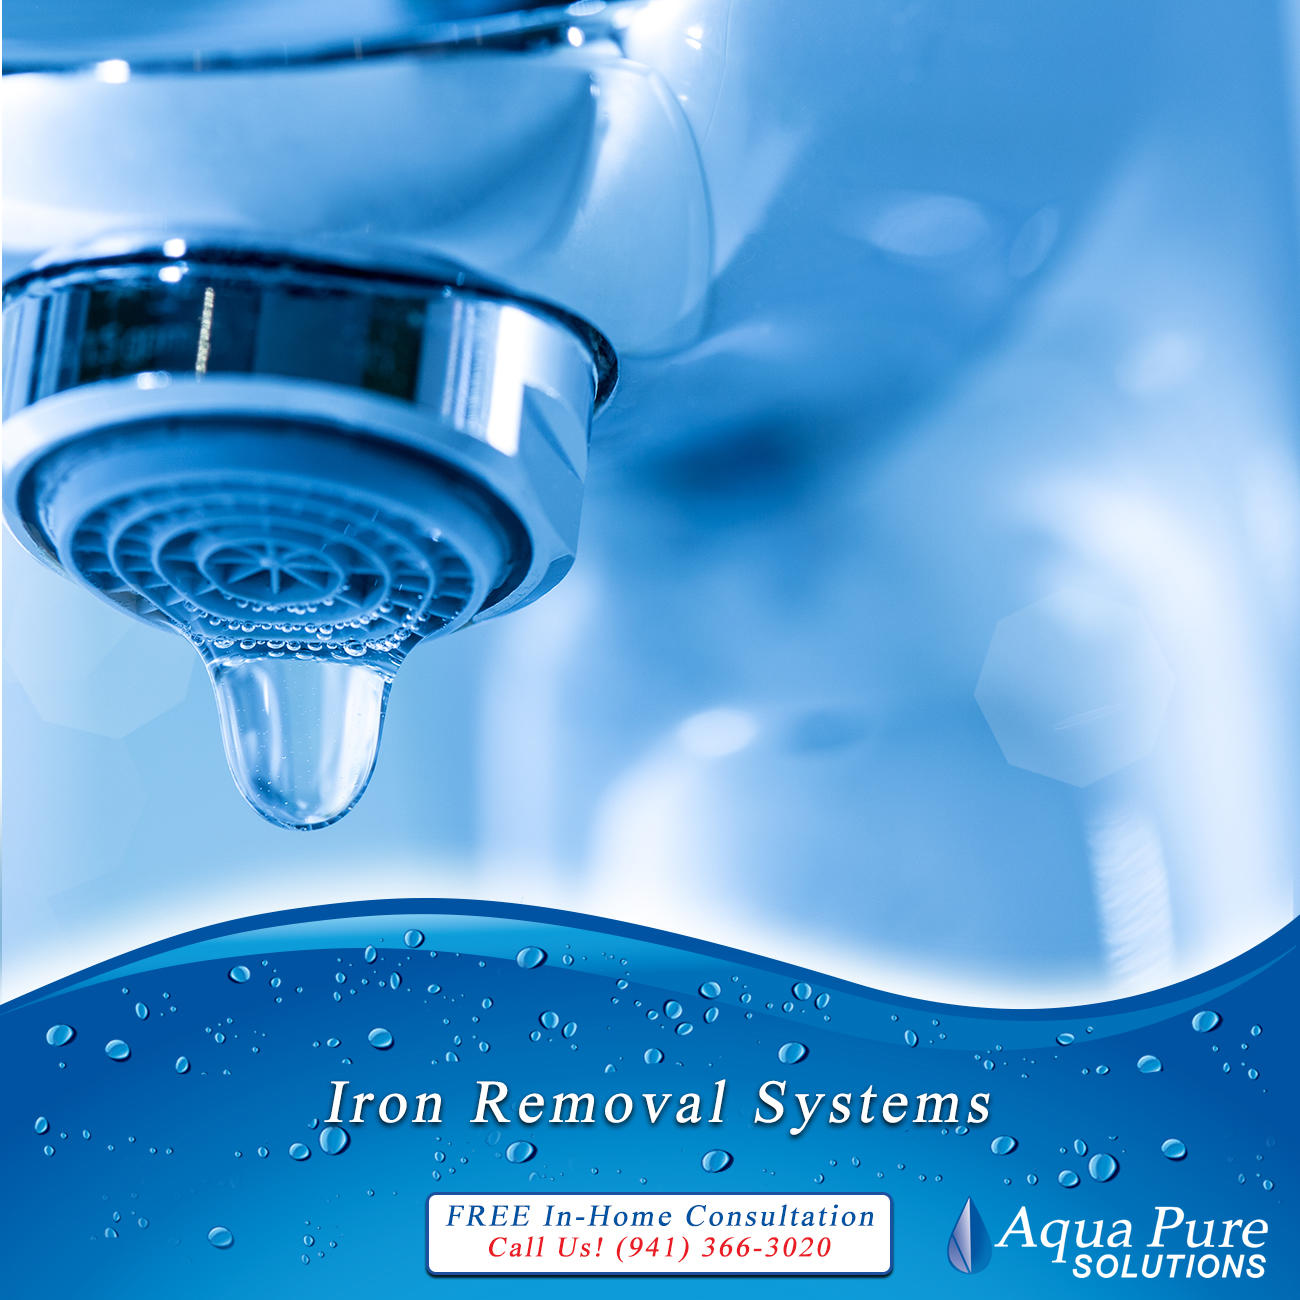 Aqua Pure Solutions